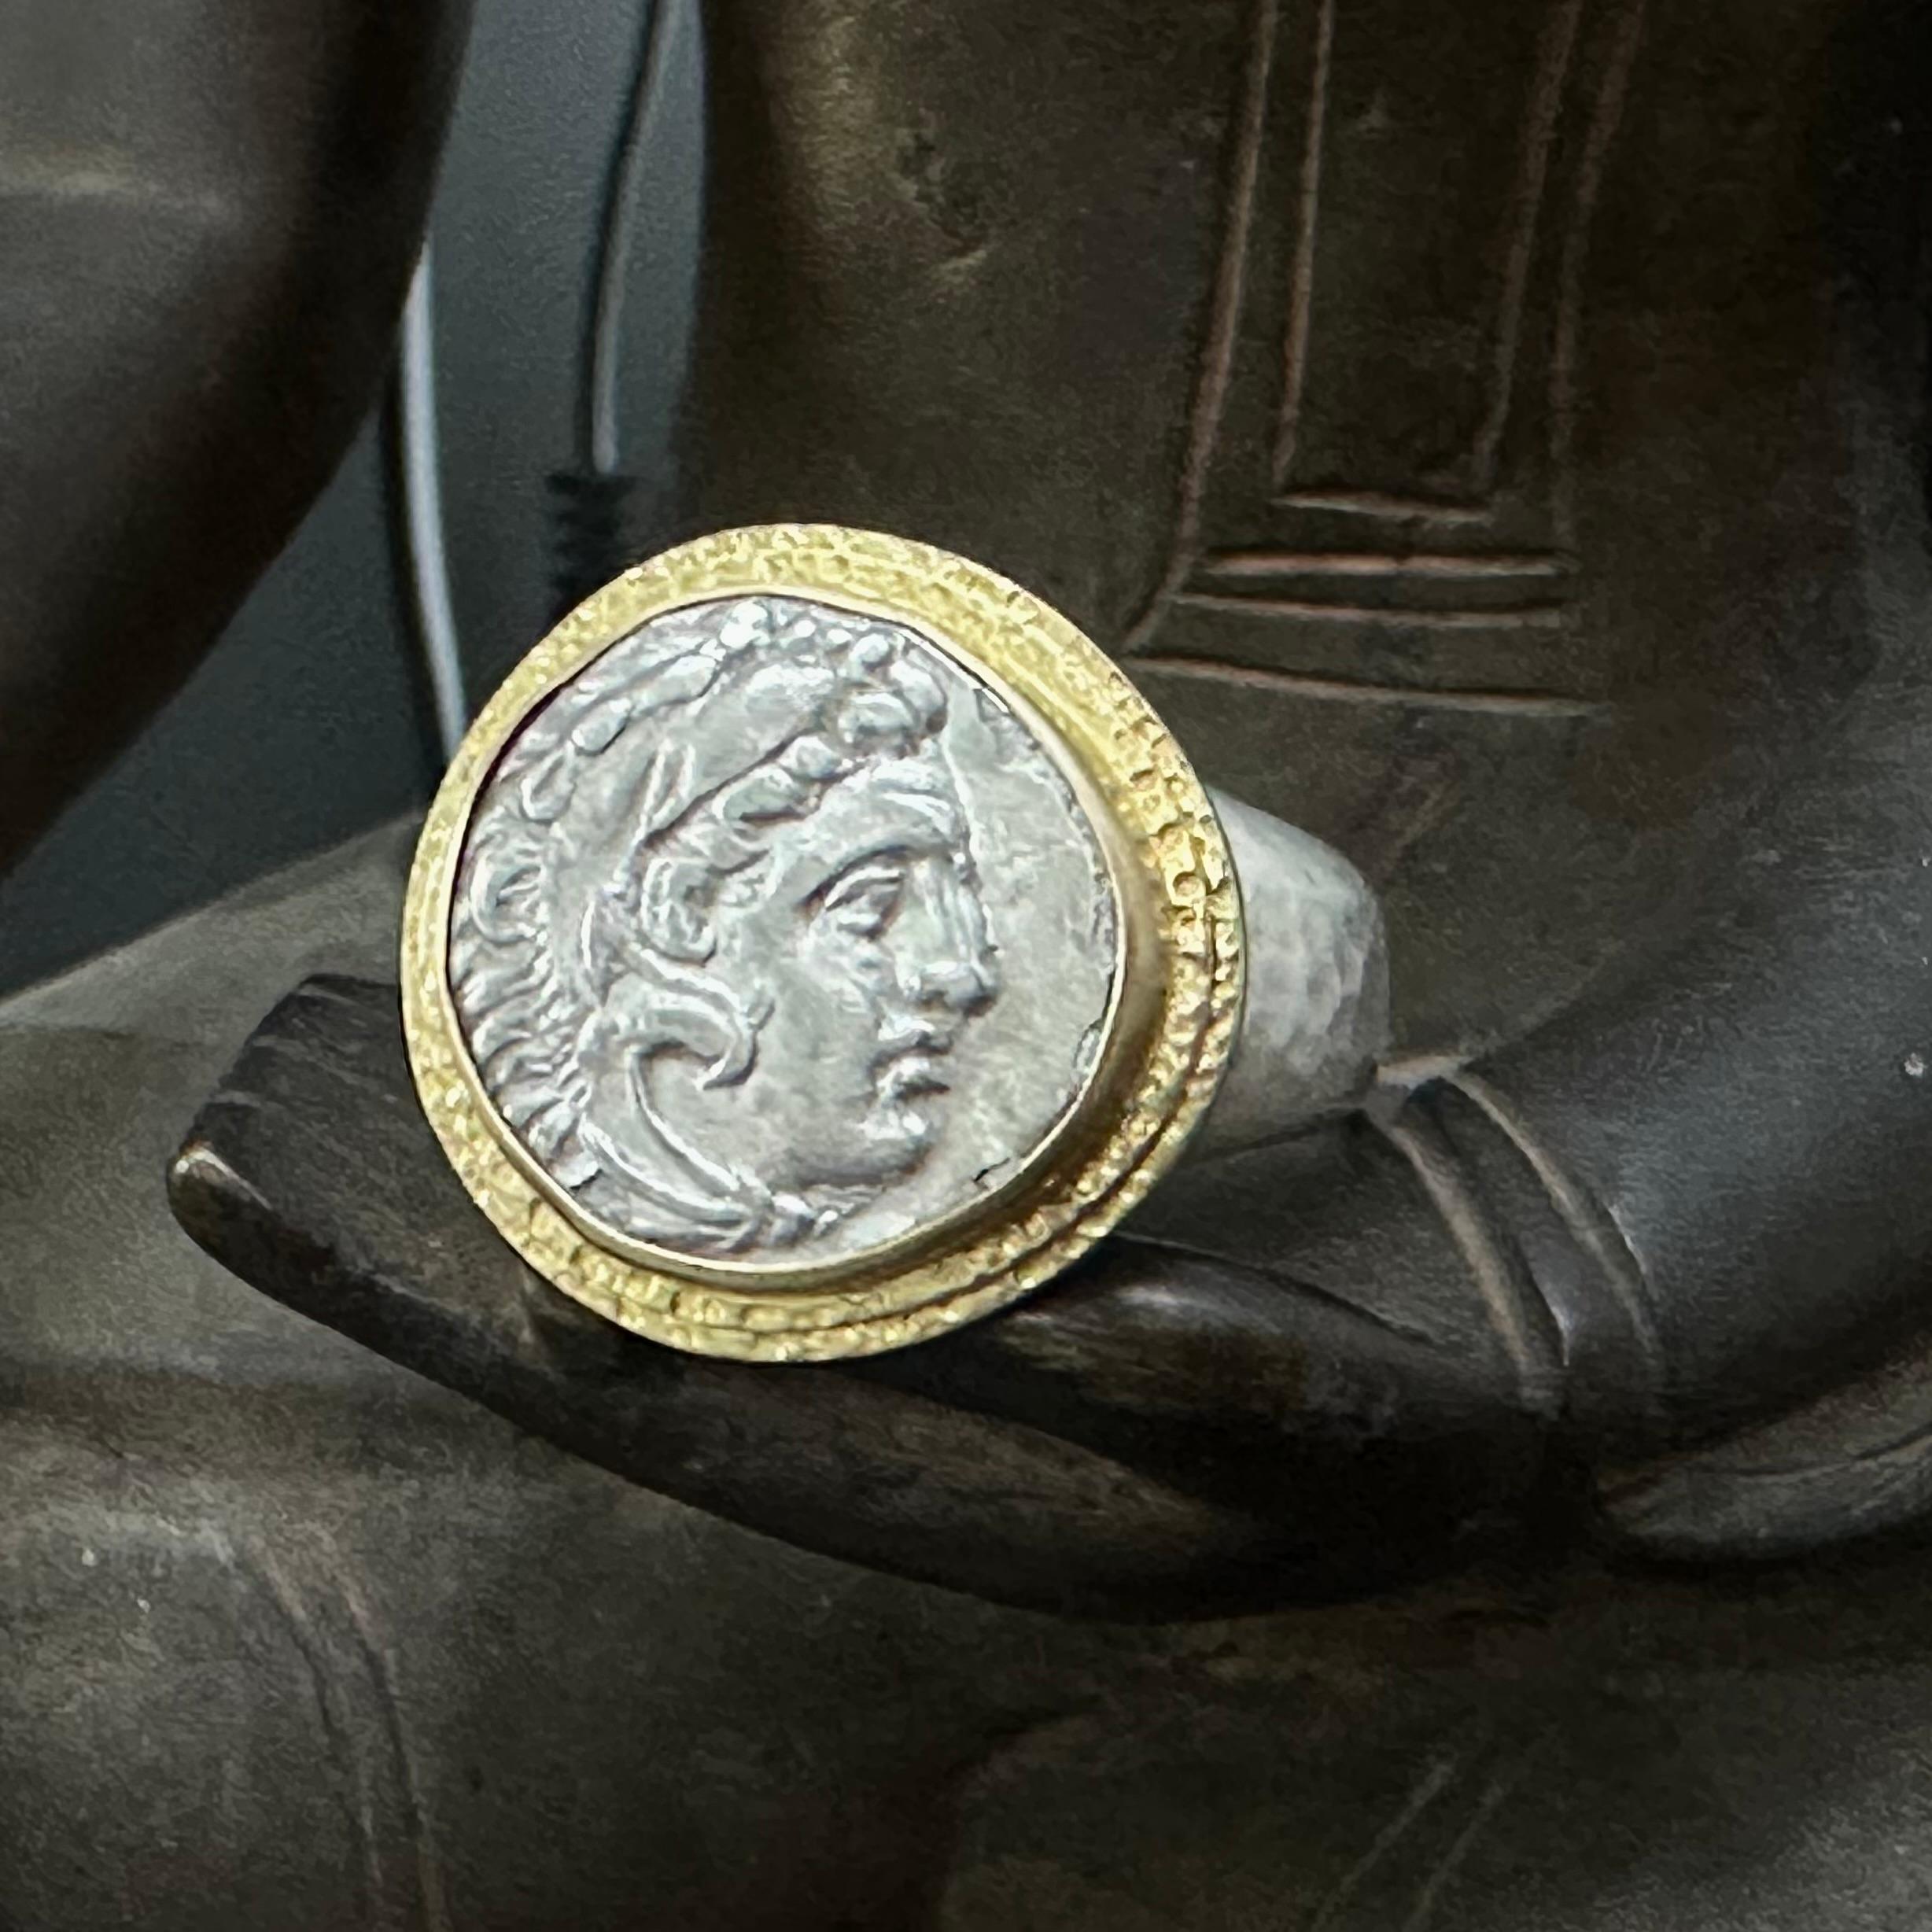 Eine echte Silber-Drachme aus dem antiken Makedonien 323-317 v. Chr. wurde im Namen Alexanders des Großen geprägt. Diese Münze, die den griechischen Sagenhelden Herakles mit einem Umhang aus Löwenfell zeigt, war in den von Alexander eroberten